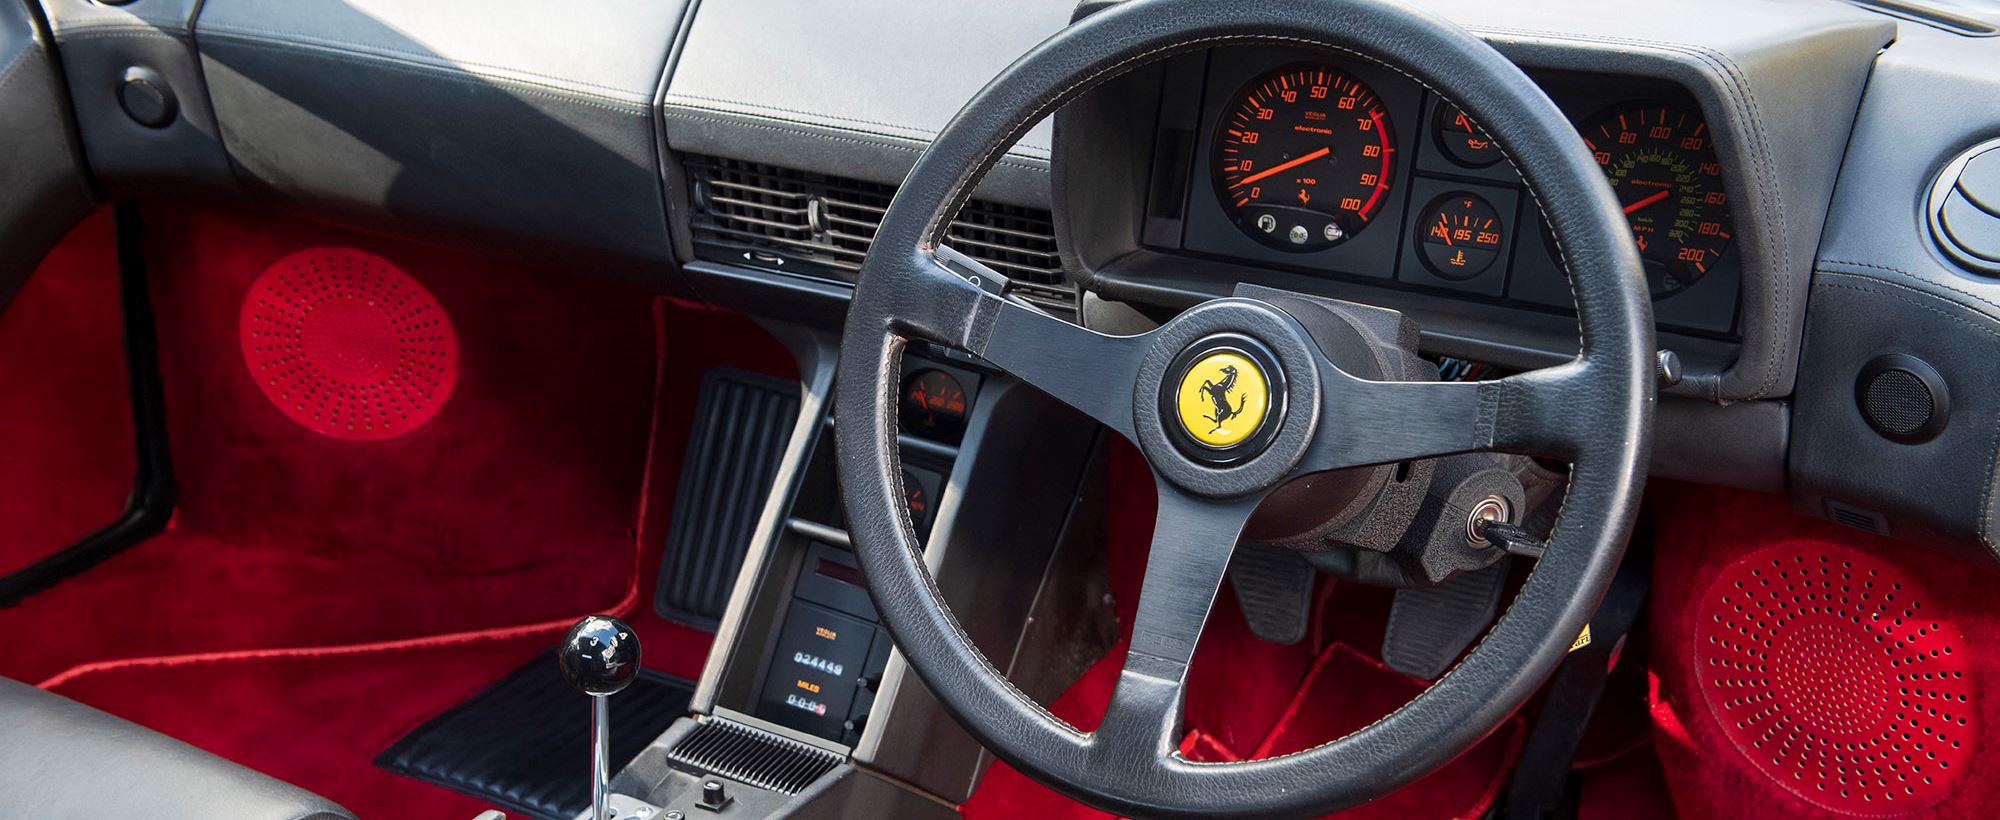 Ferrari Testarossa 015.jpg